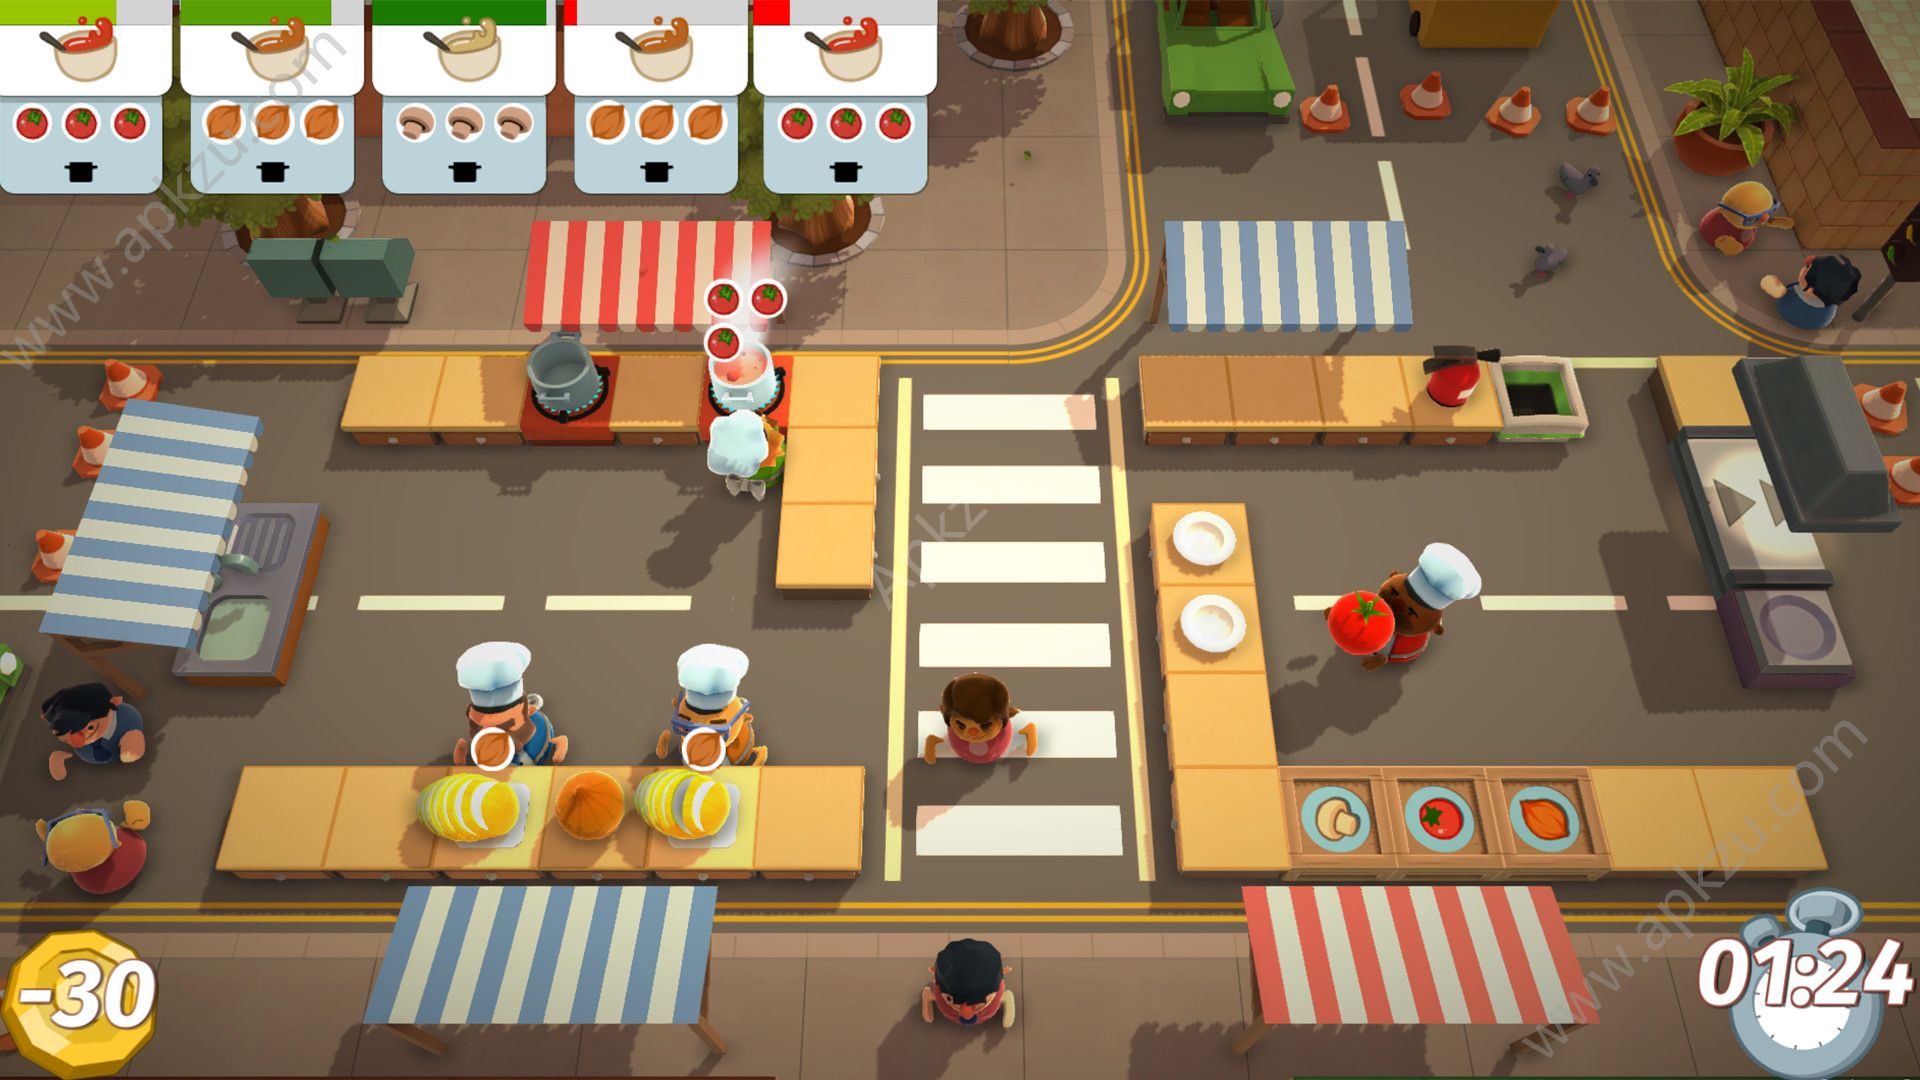 厨房模拟器游戏_模拟厨房的游戏_手机模拟厨房游戏